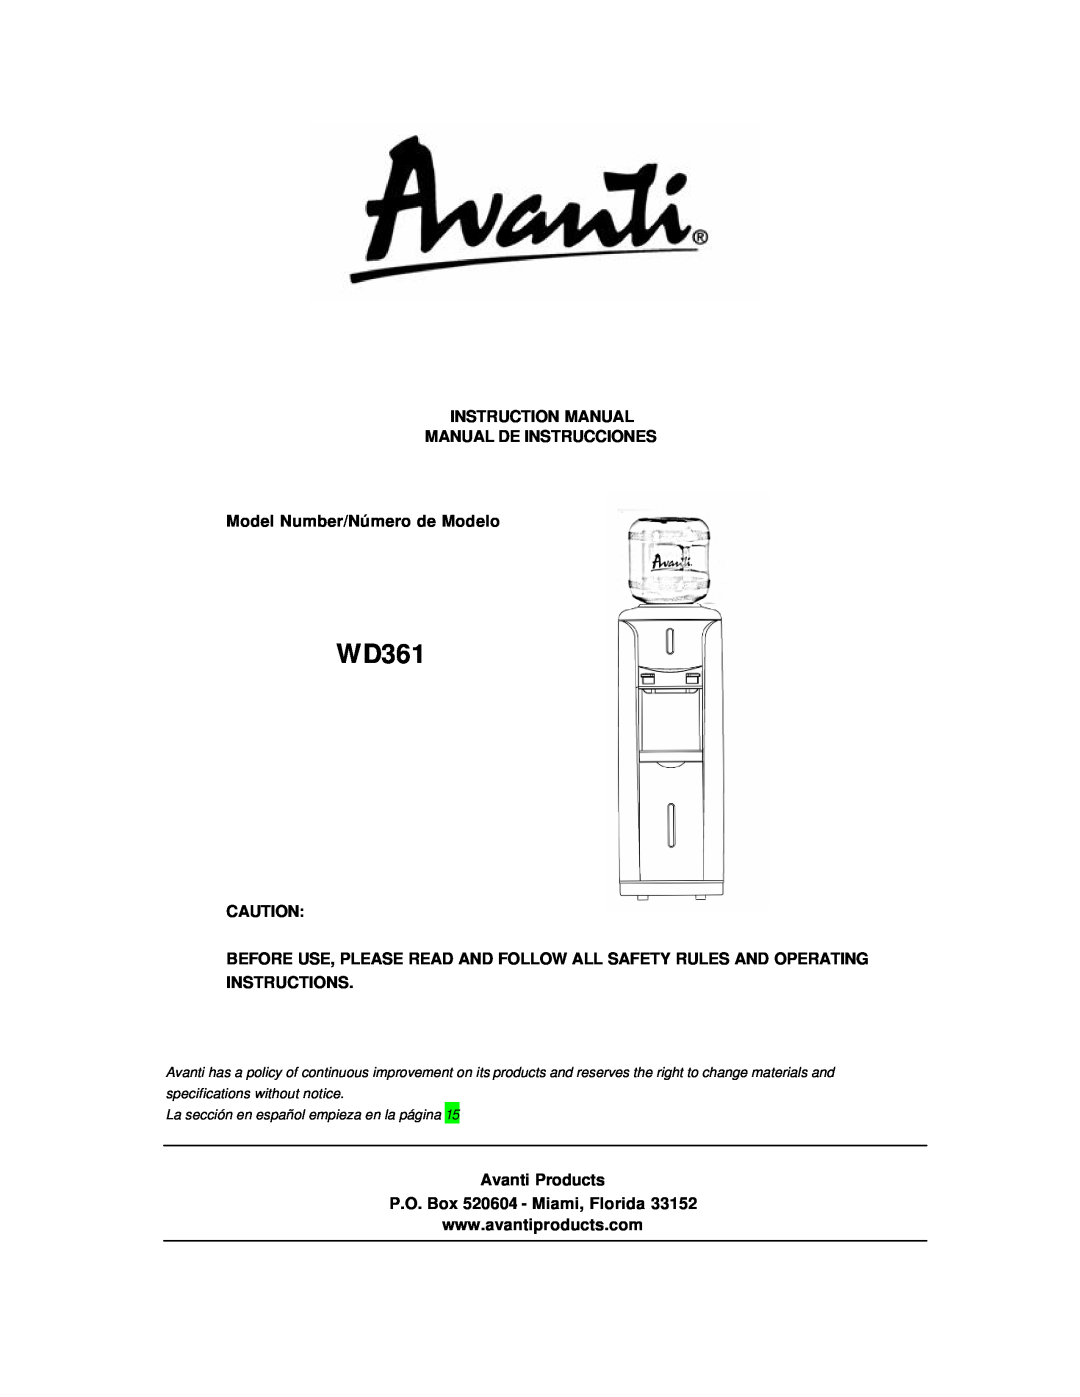 Avanti WD361 instruction manual Instruction Manual Manual De Instrucciones, Model Number/Número de Modelo 